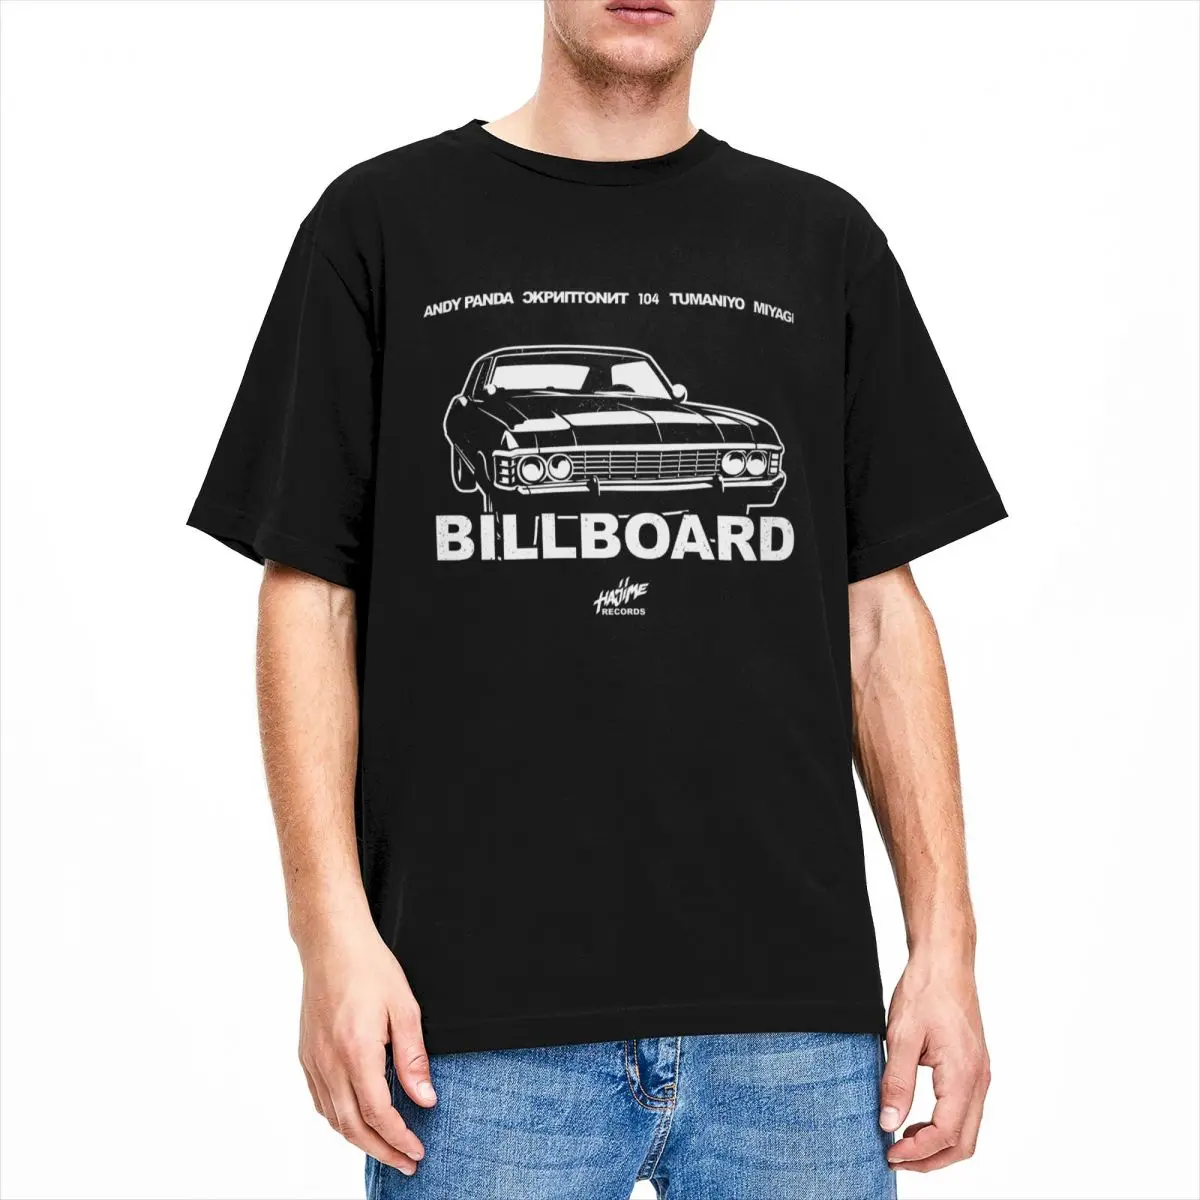 

Мужская футболка хаджим Мияги Энди панда туманио рекламный щит один аксессуар смешная футболка из чистого хлопка с коротким рукавом